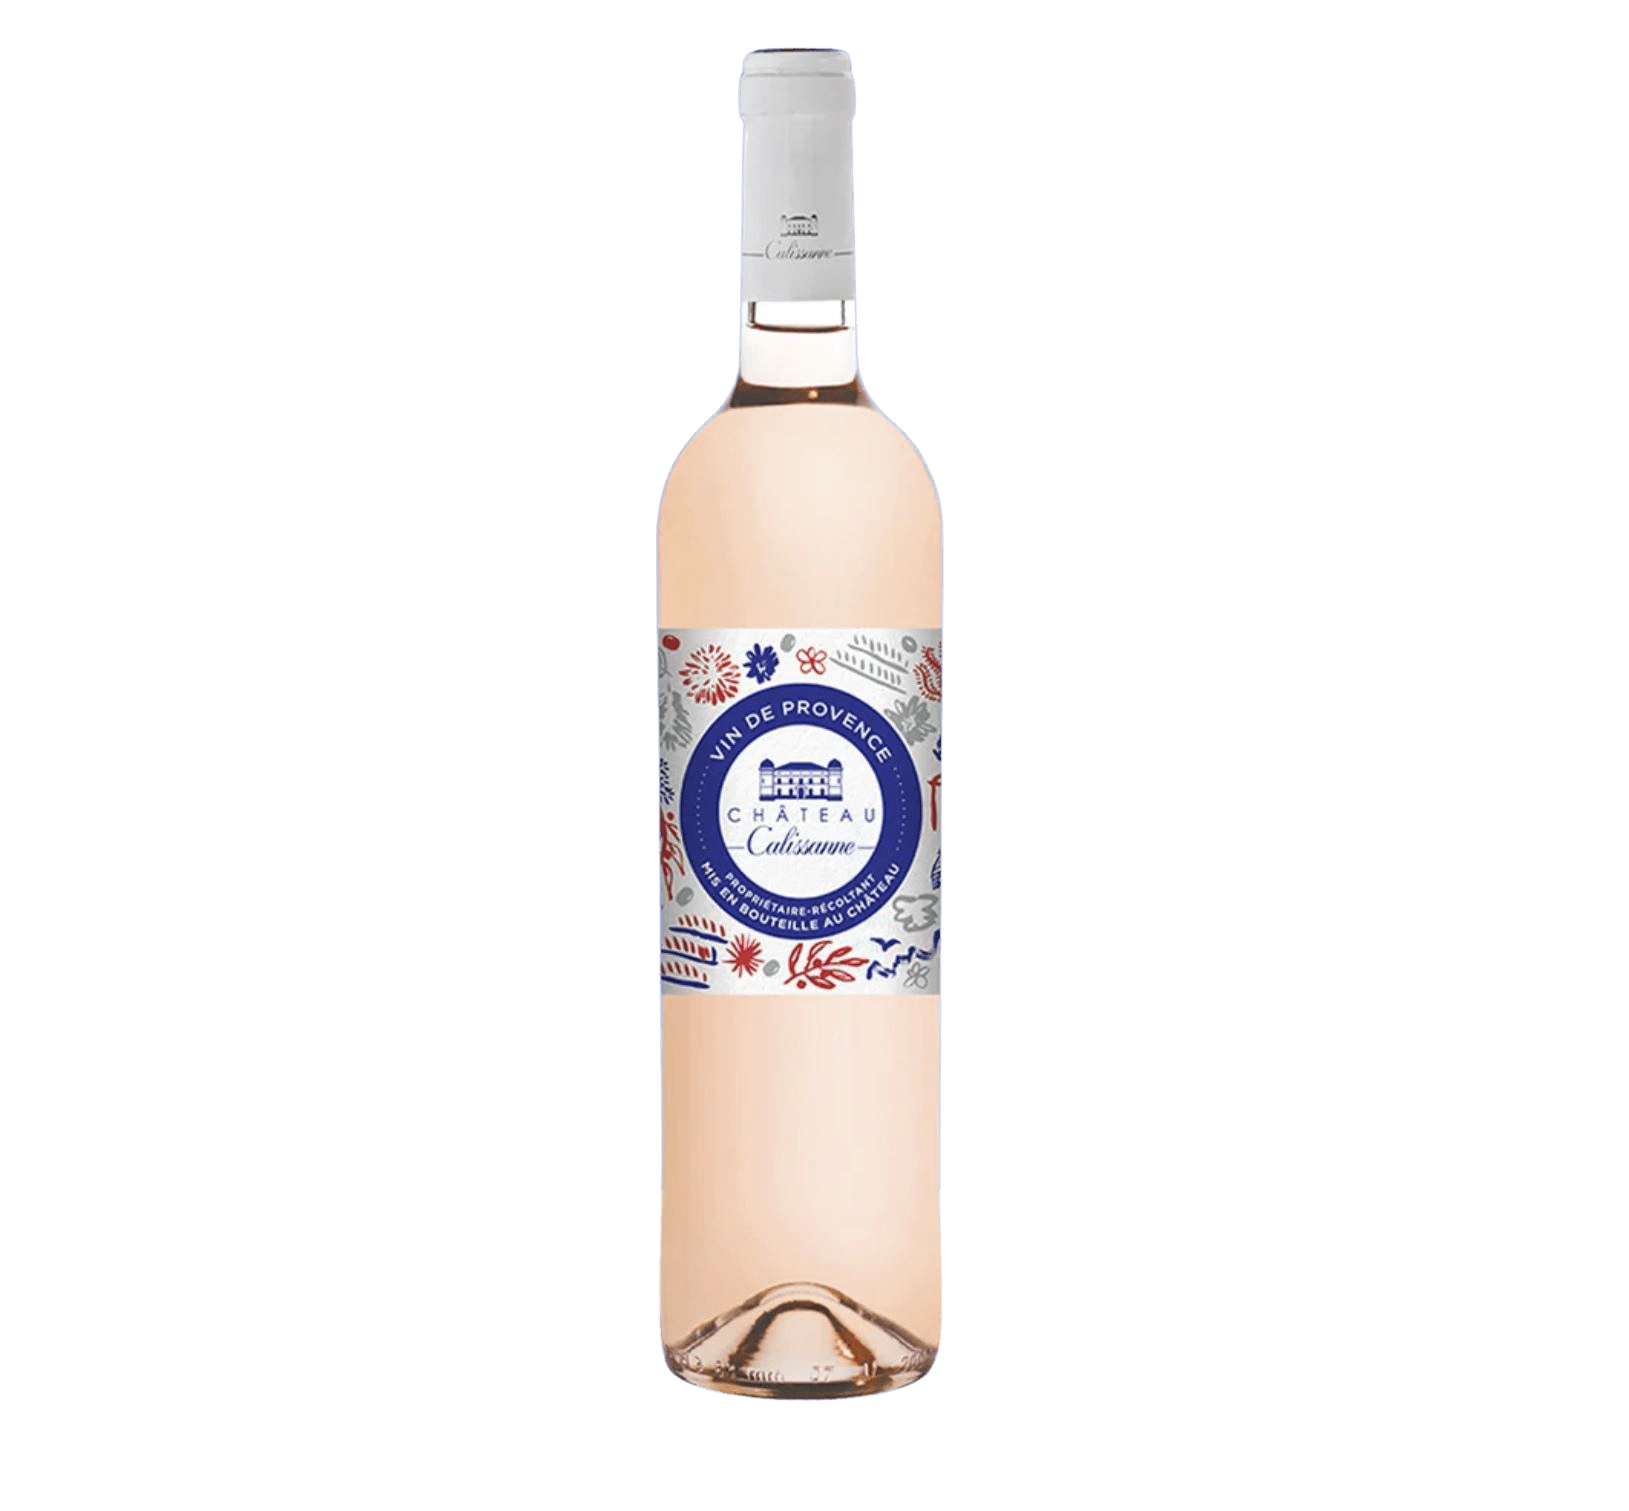 Vin rosé "Cocorico" - Edition limitée - Château Calissanne